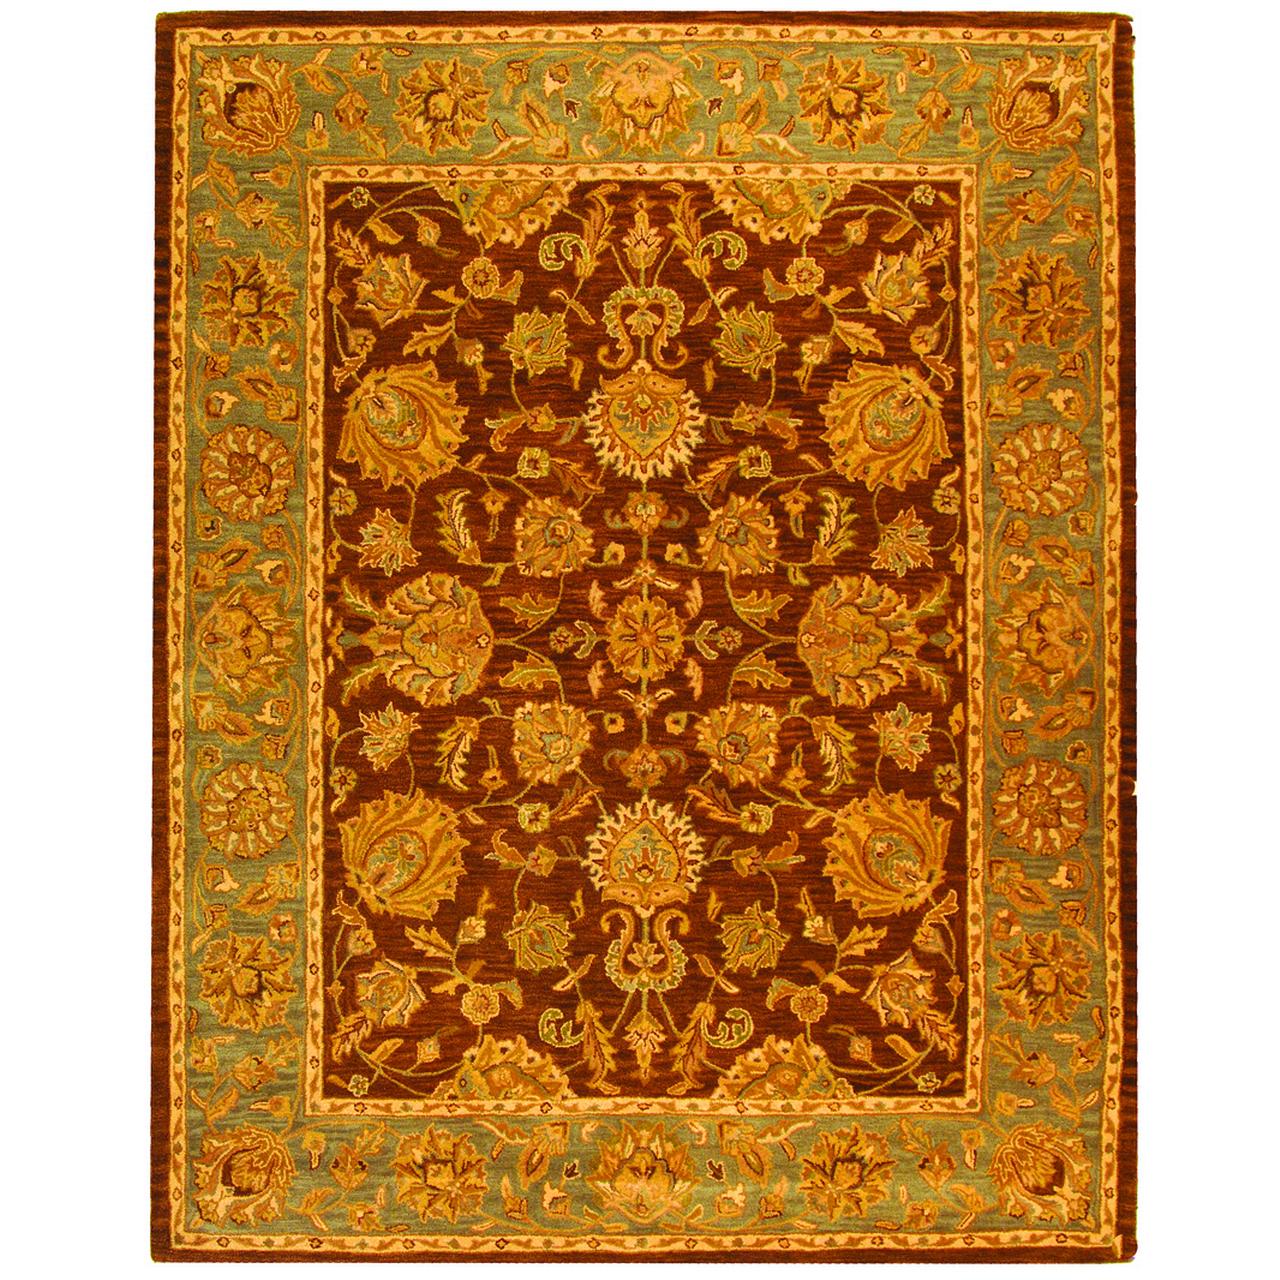 SAFAVIEH Heritage Regis Traditional Wool Area Rug, Brown/Blue, 7'6" x 9'6" - image 1 of 9